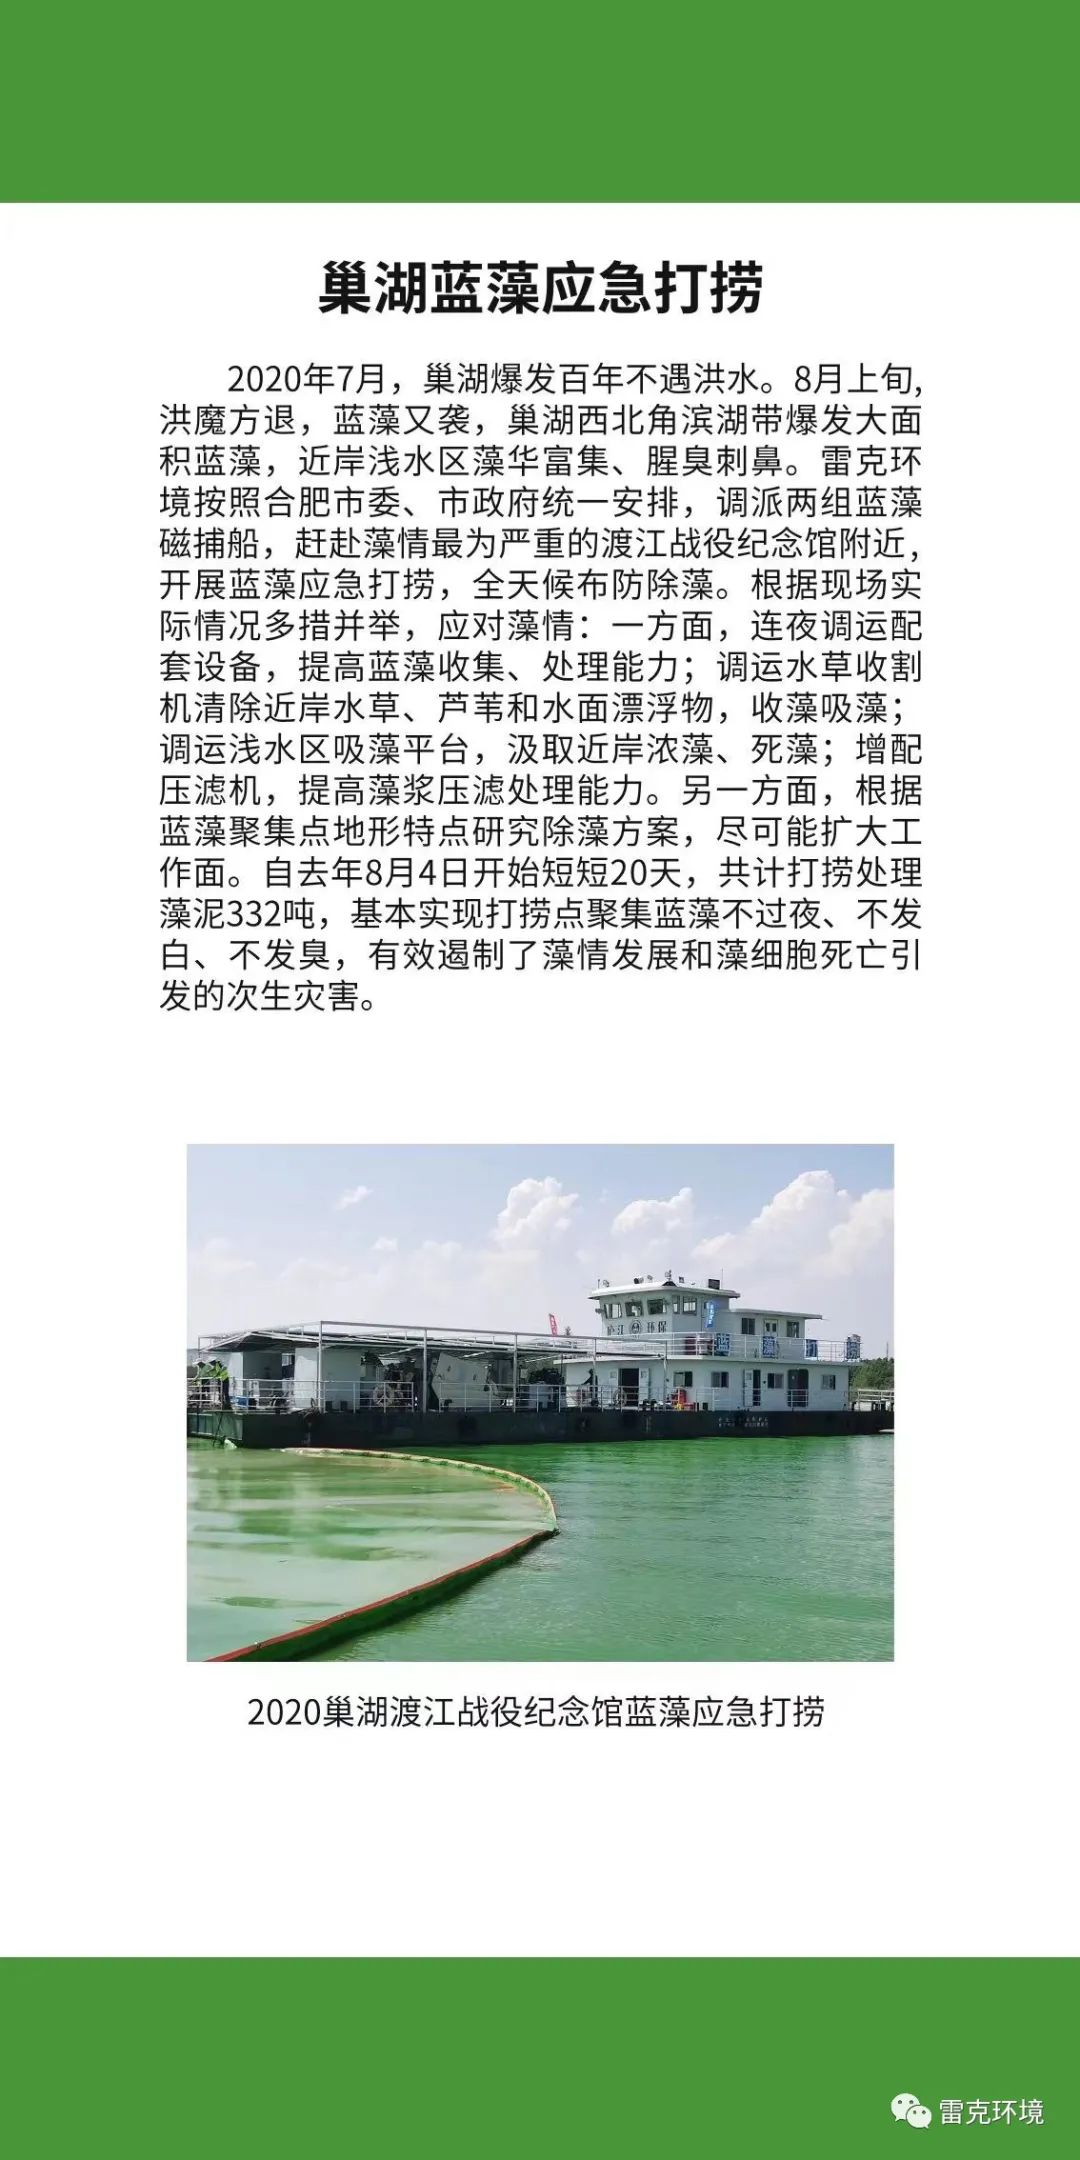 中國水博覽會雷克環境展位內容展示